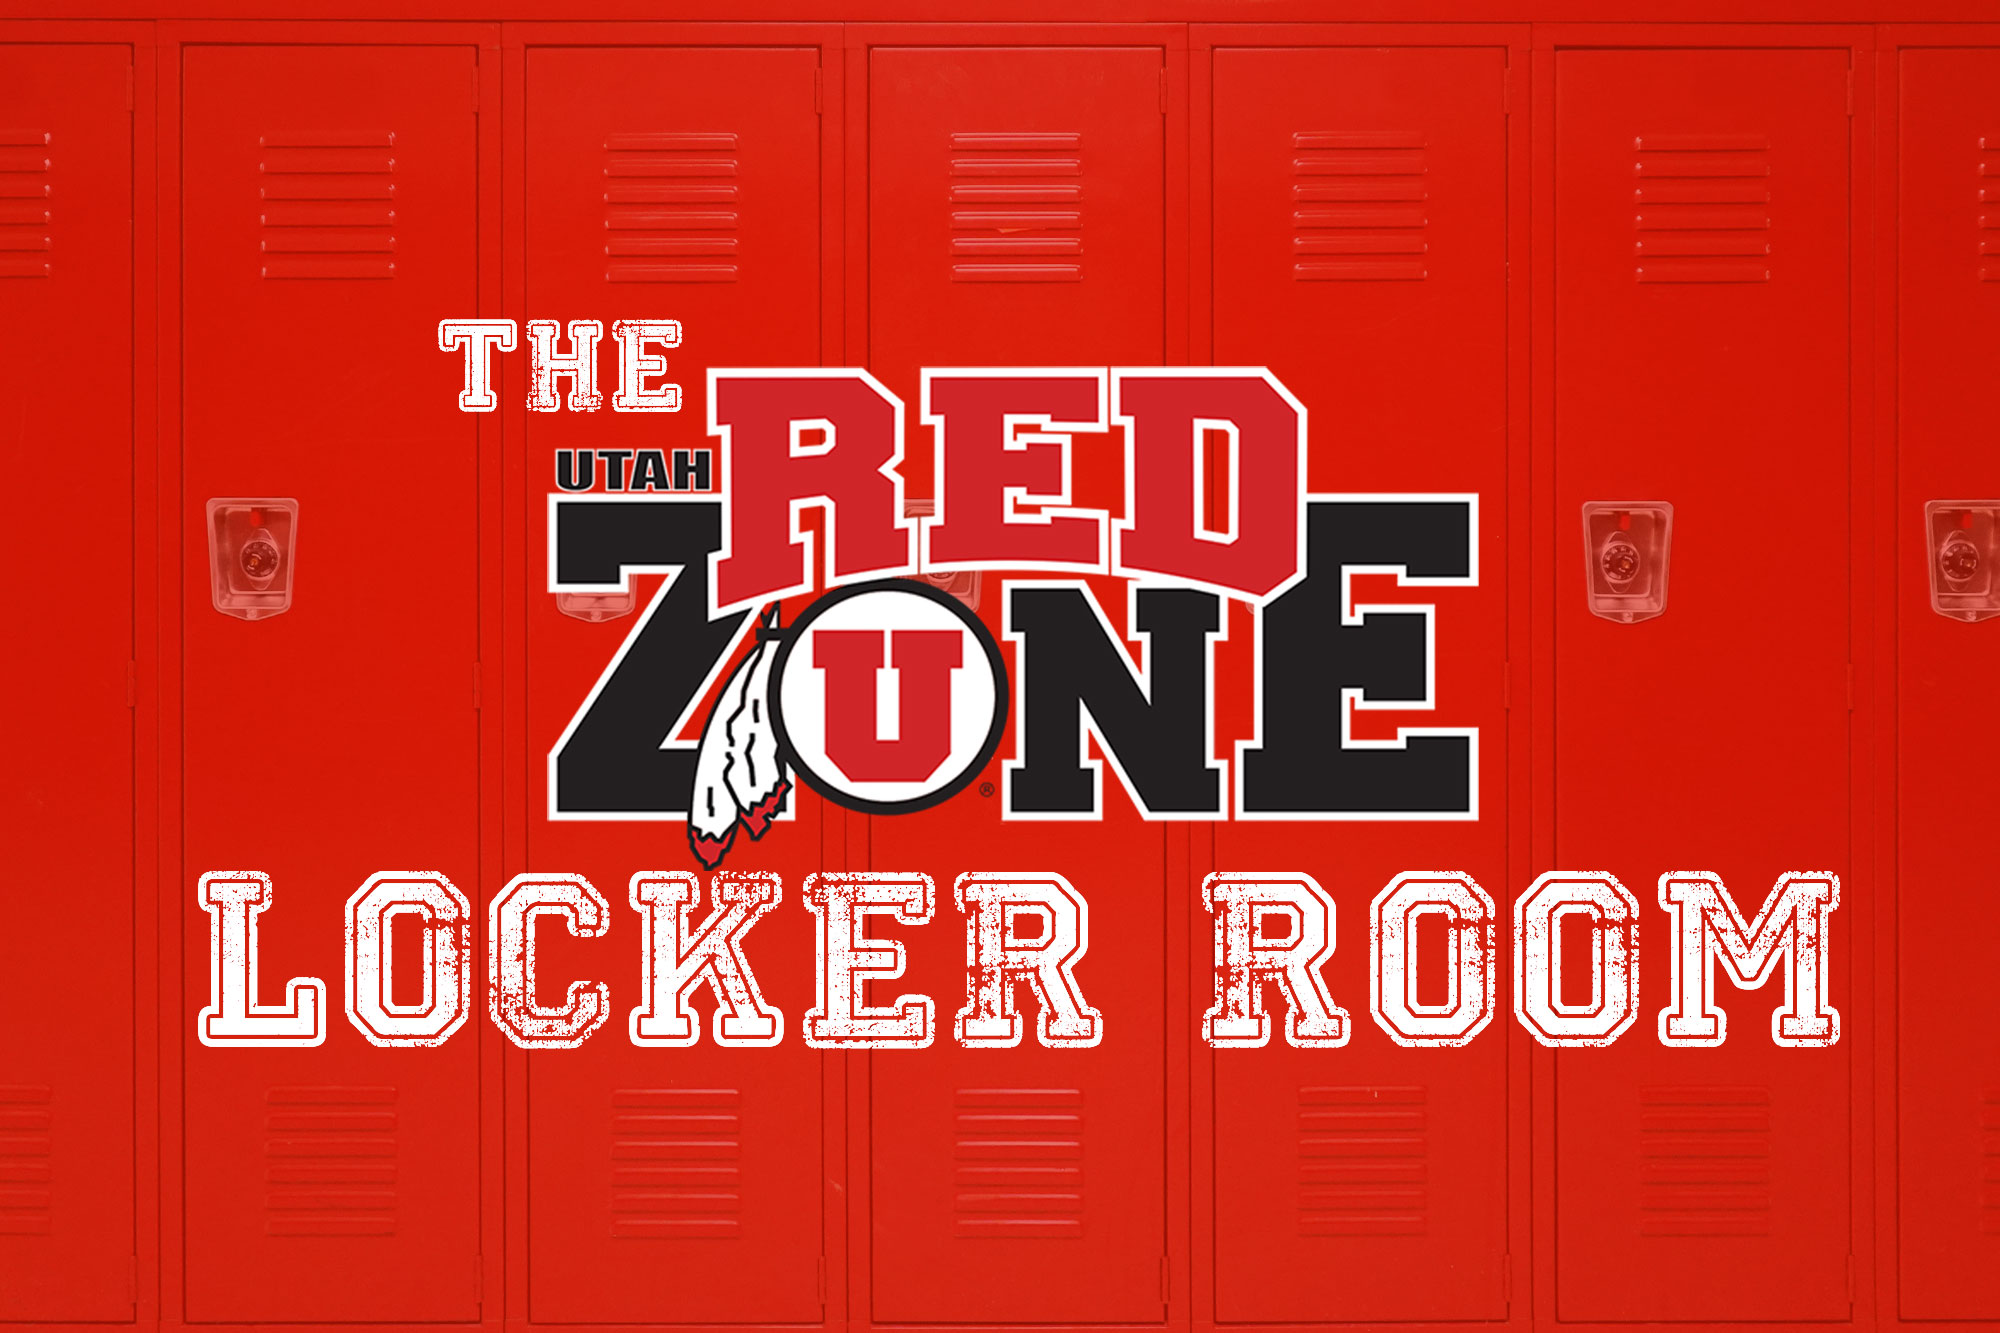 RZ-locker-room